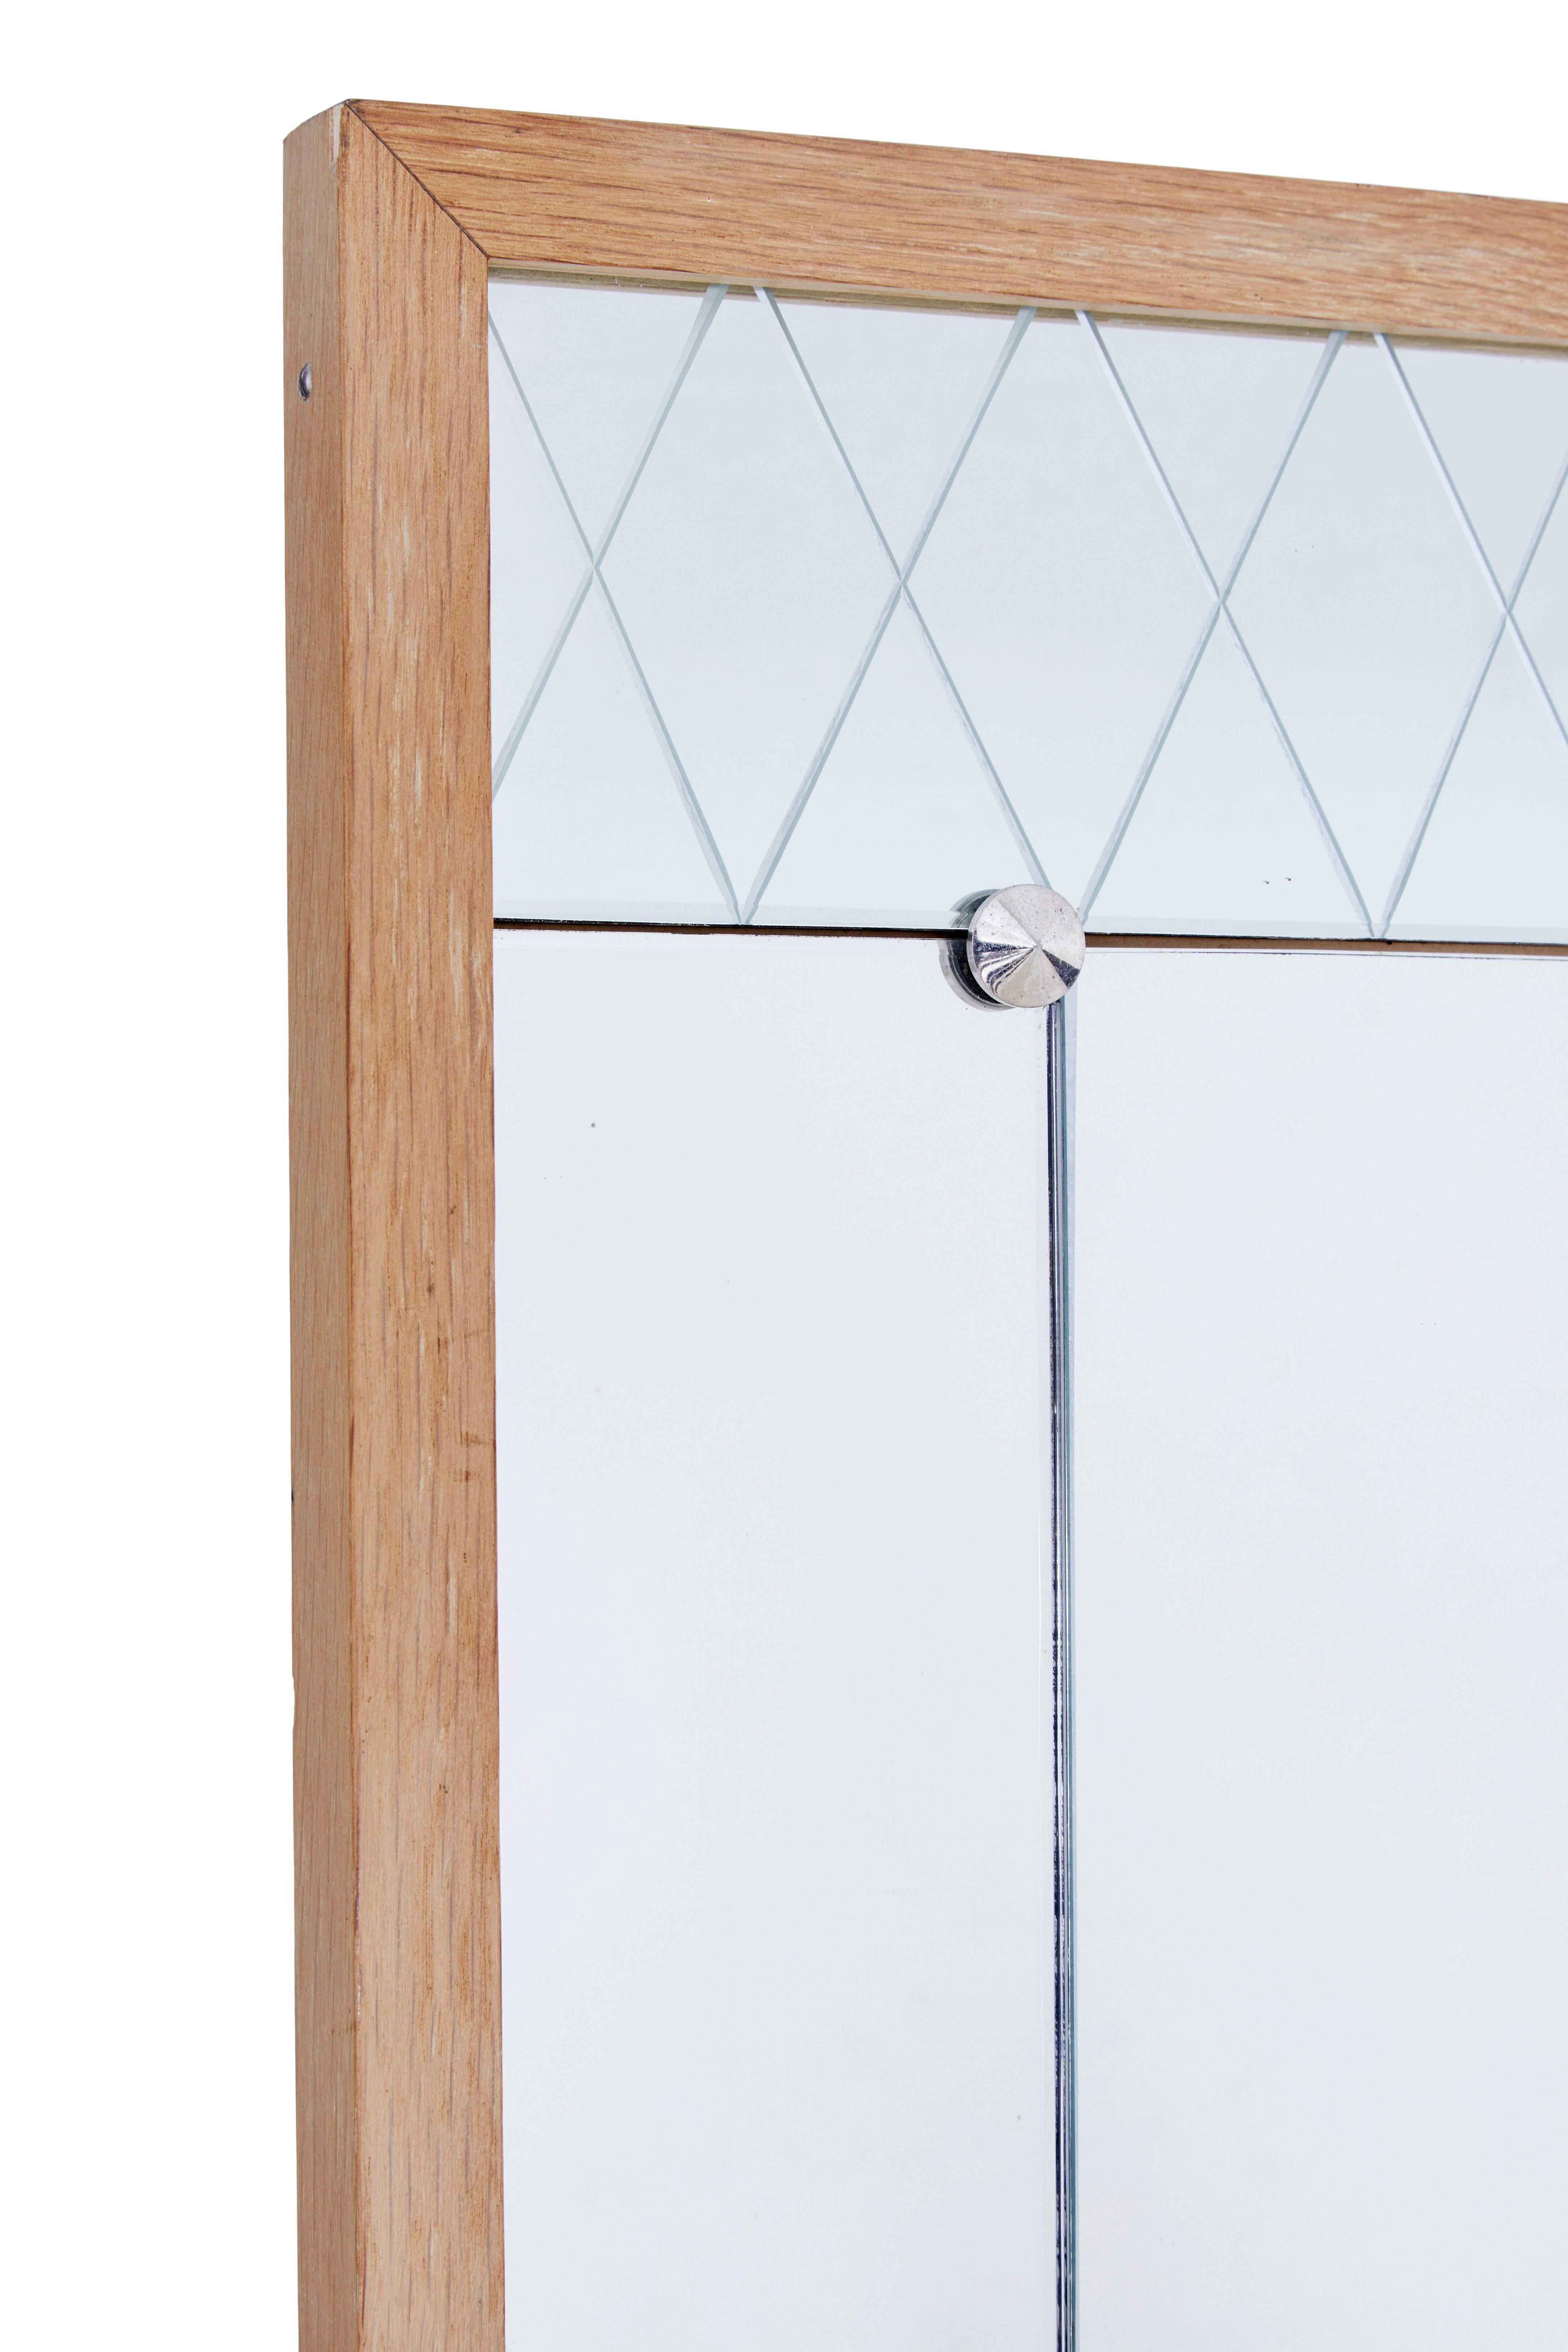 Geätzter Wandspiegel aus Eiche, Mitte 20. Jahrhundert, um 1960.

Spiegel aus schwedischer Produktion, präsentiert in einem hellen Eichenrahmen.  Zentraler, aufrecht stehender Hochformat-Hauptteil des Spiegels mit geätzten Latice-Paneelen oben und